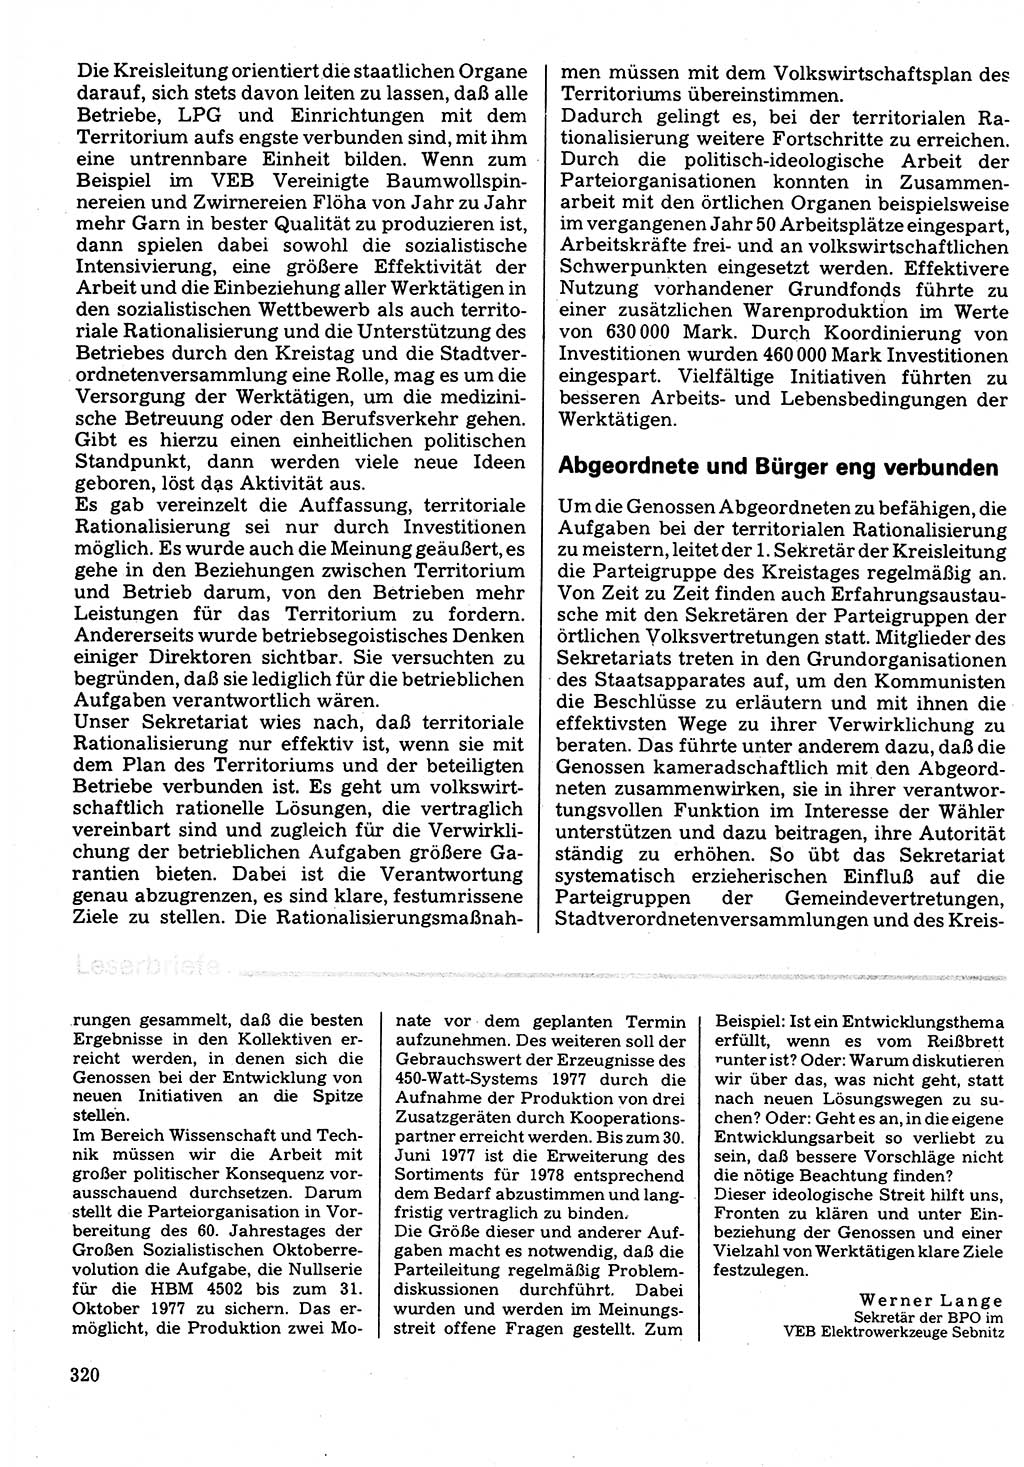 Neuer Weg (NW), Organ des Zentralkomitees (ZK) der SED (Sozialistische Einheitspartei Deutschlands) für Fragen des Parteilebens, 32. Jahrgang [Deutsche Demokratische Republik (DDR)] 1977, Seite 320 (NW ZK SED DDR 1977, S. 320)